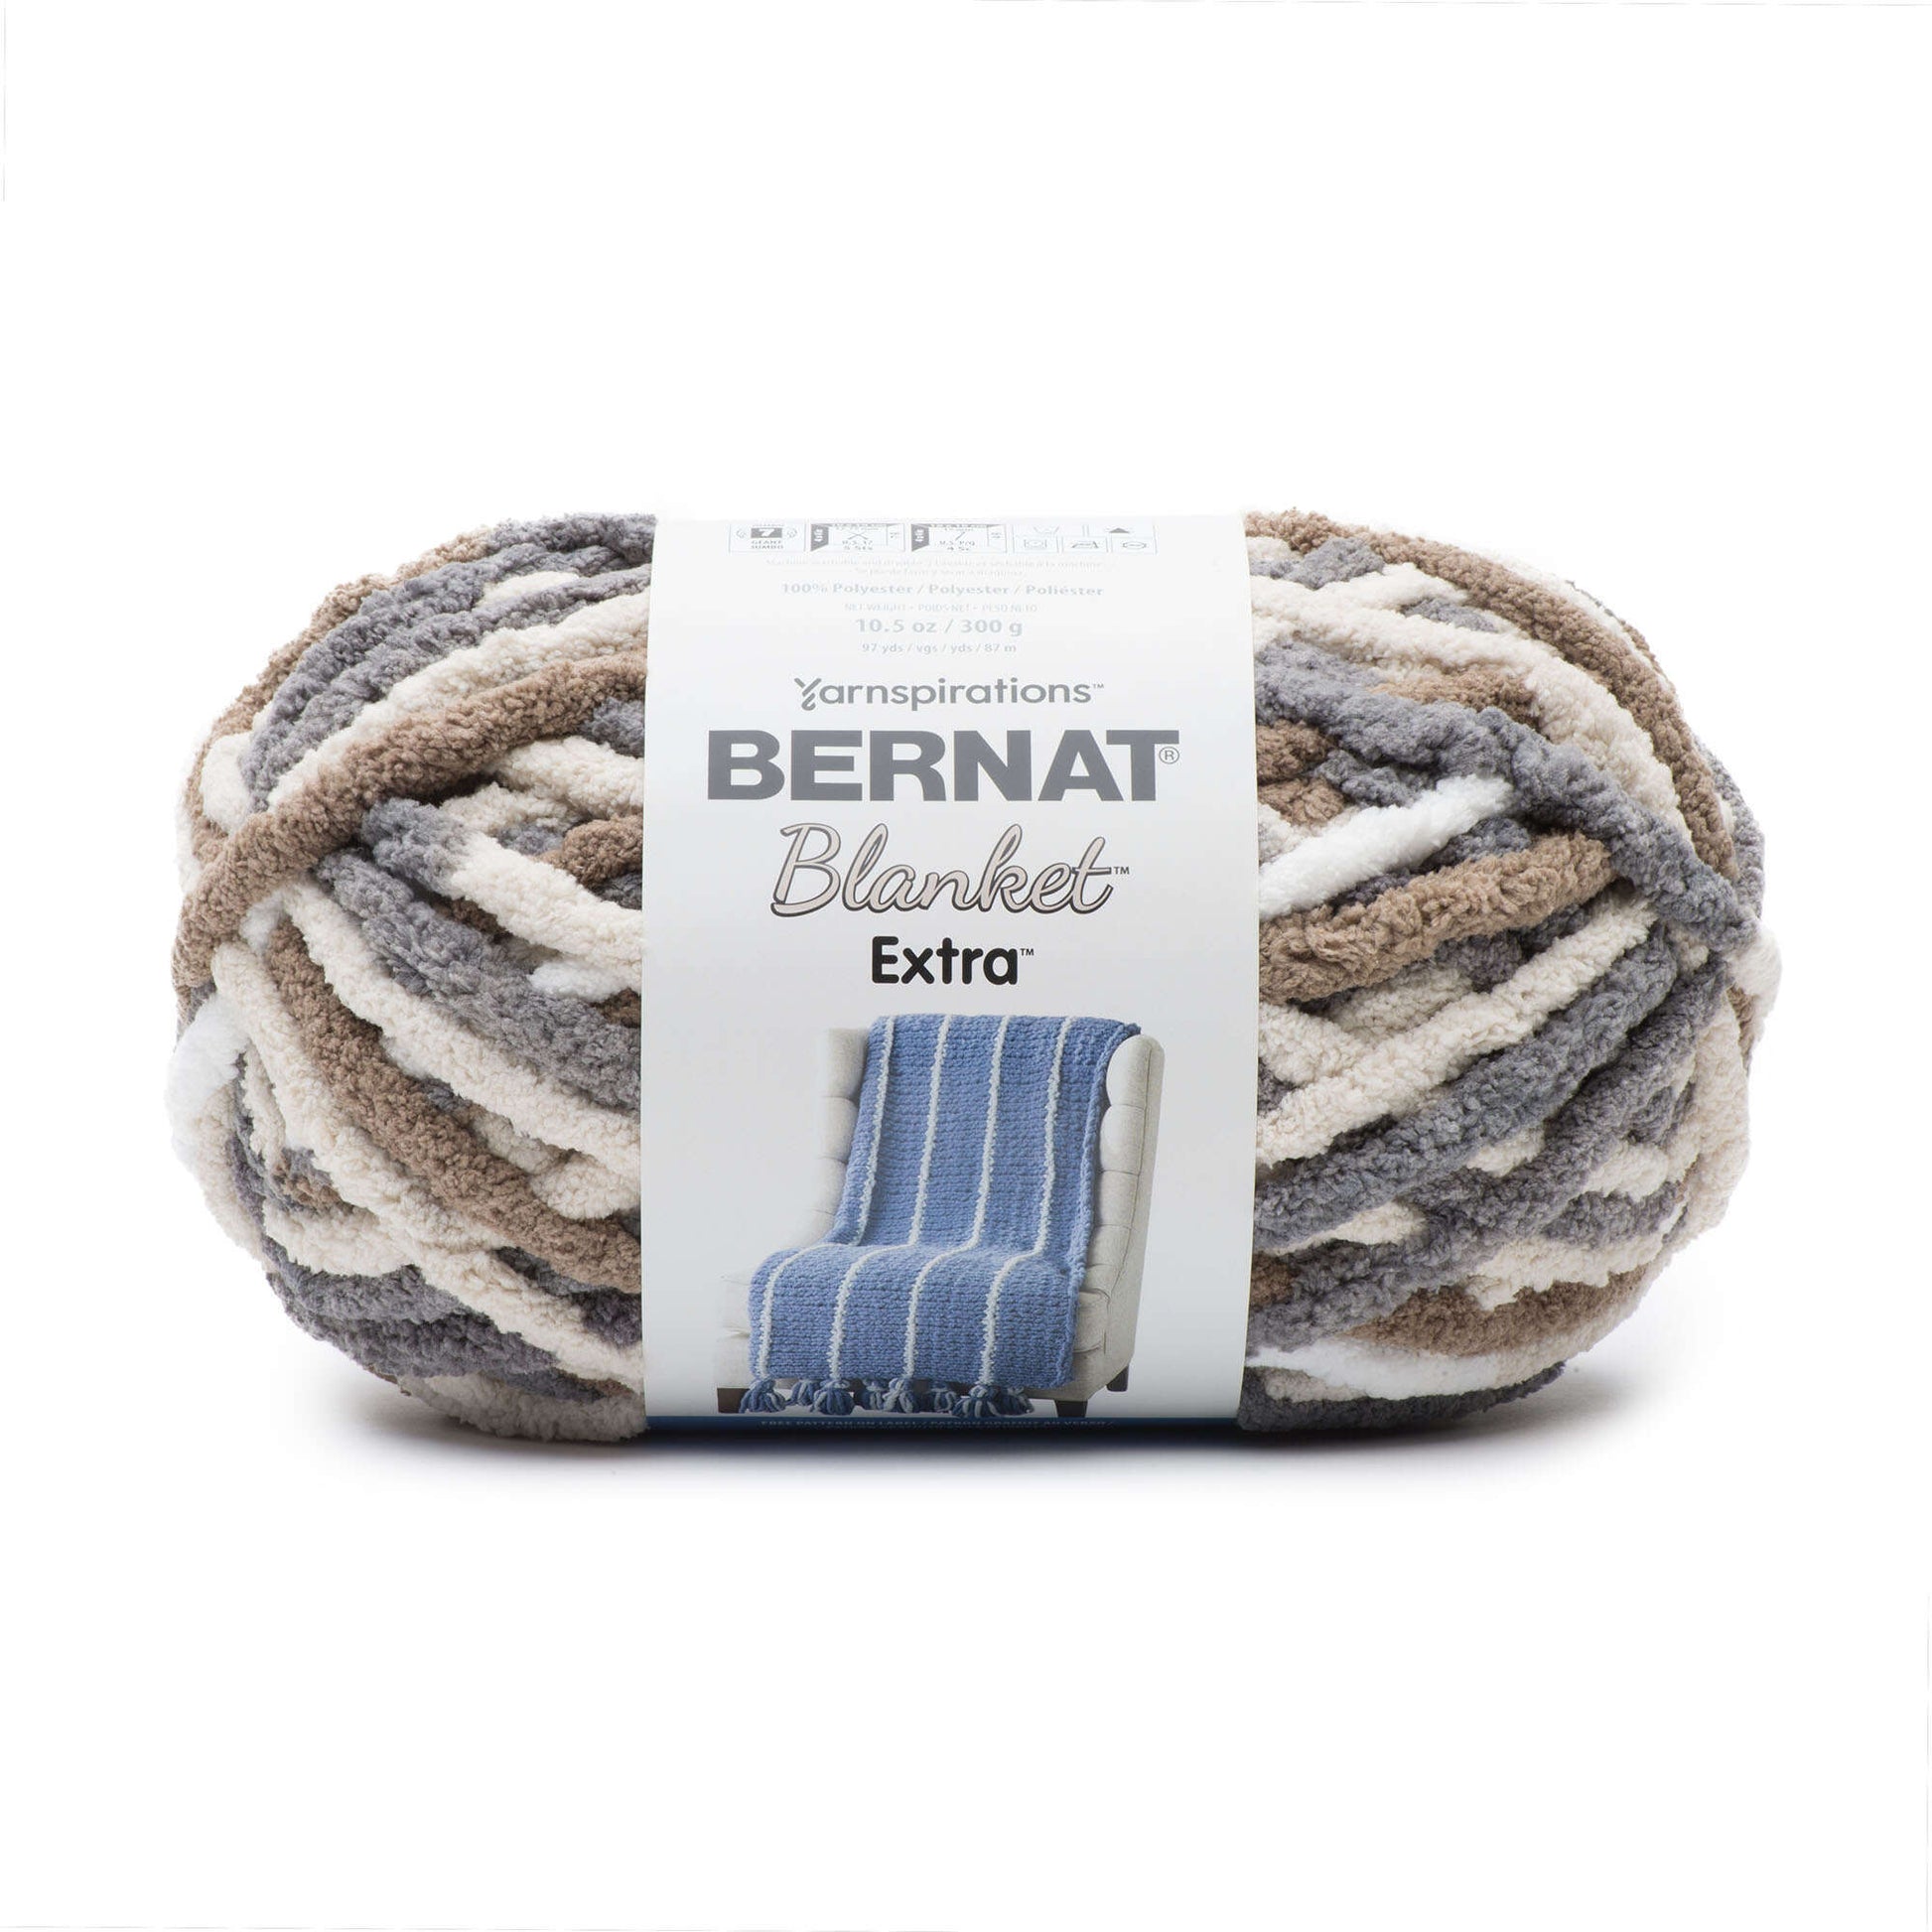 Bernat Blanket Extra Yarn (300g/10.5oz) Mushroom Mix